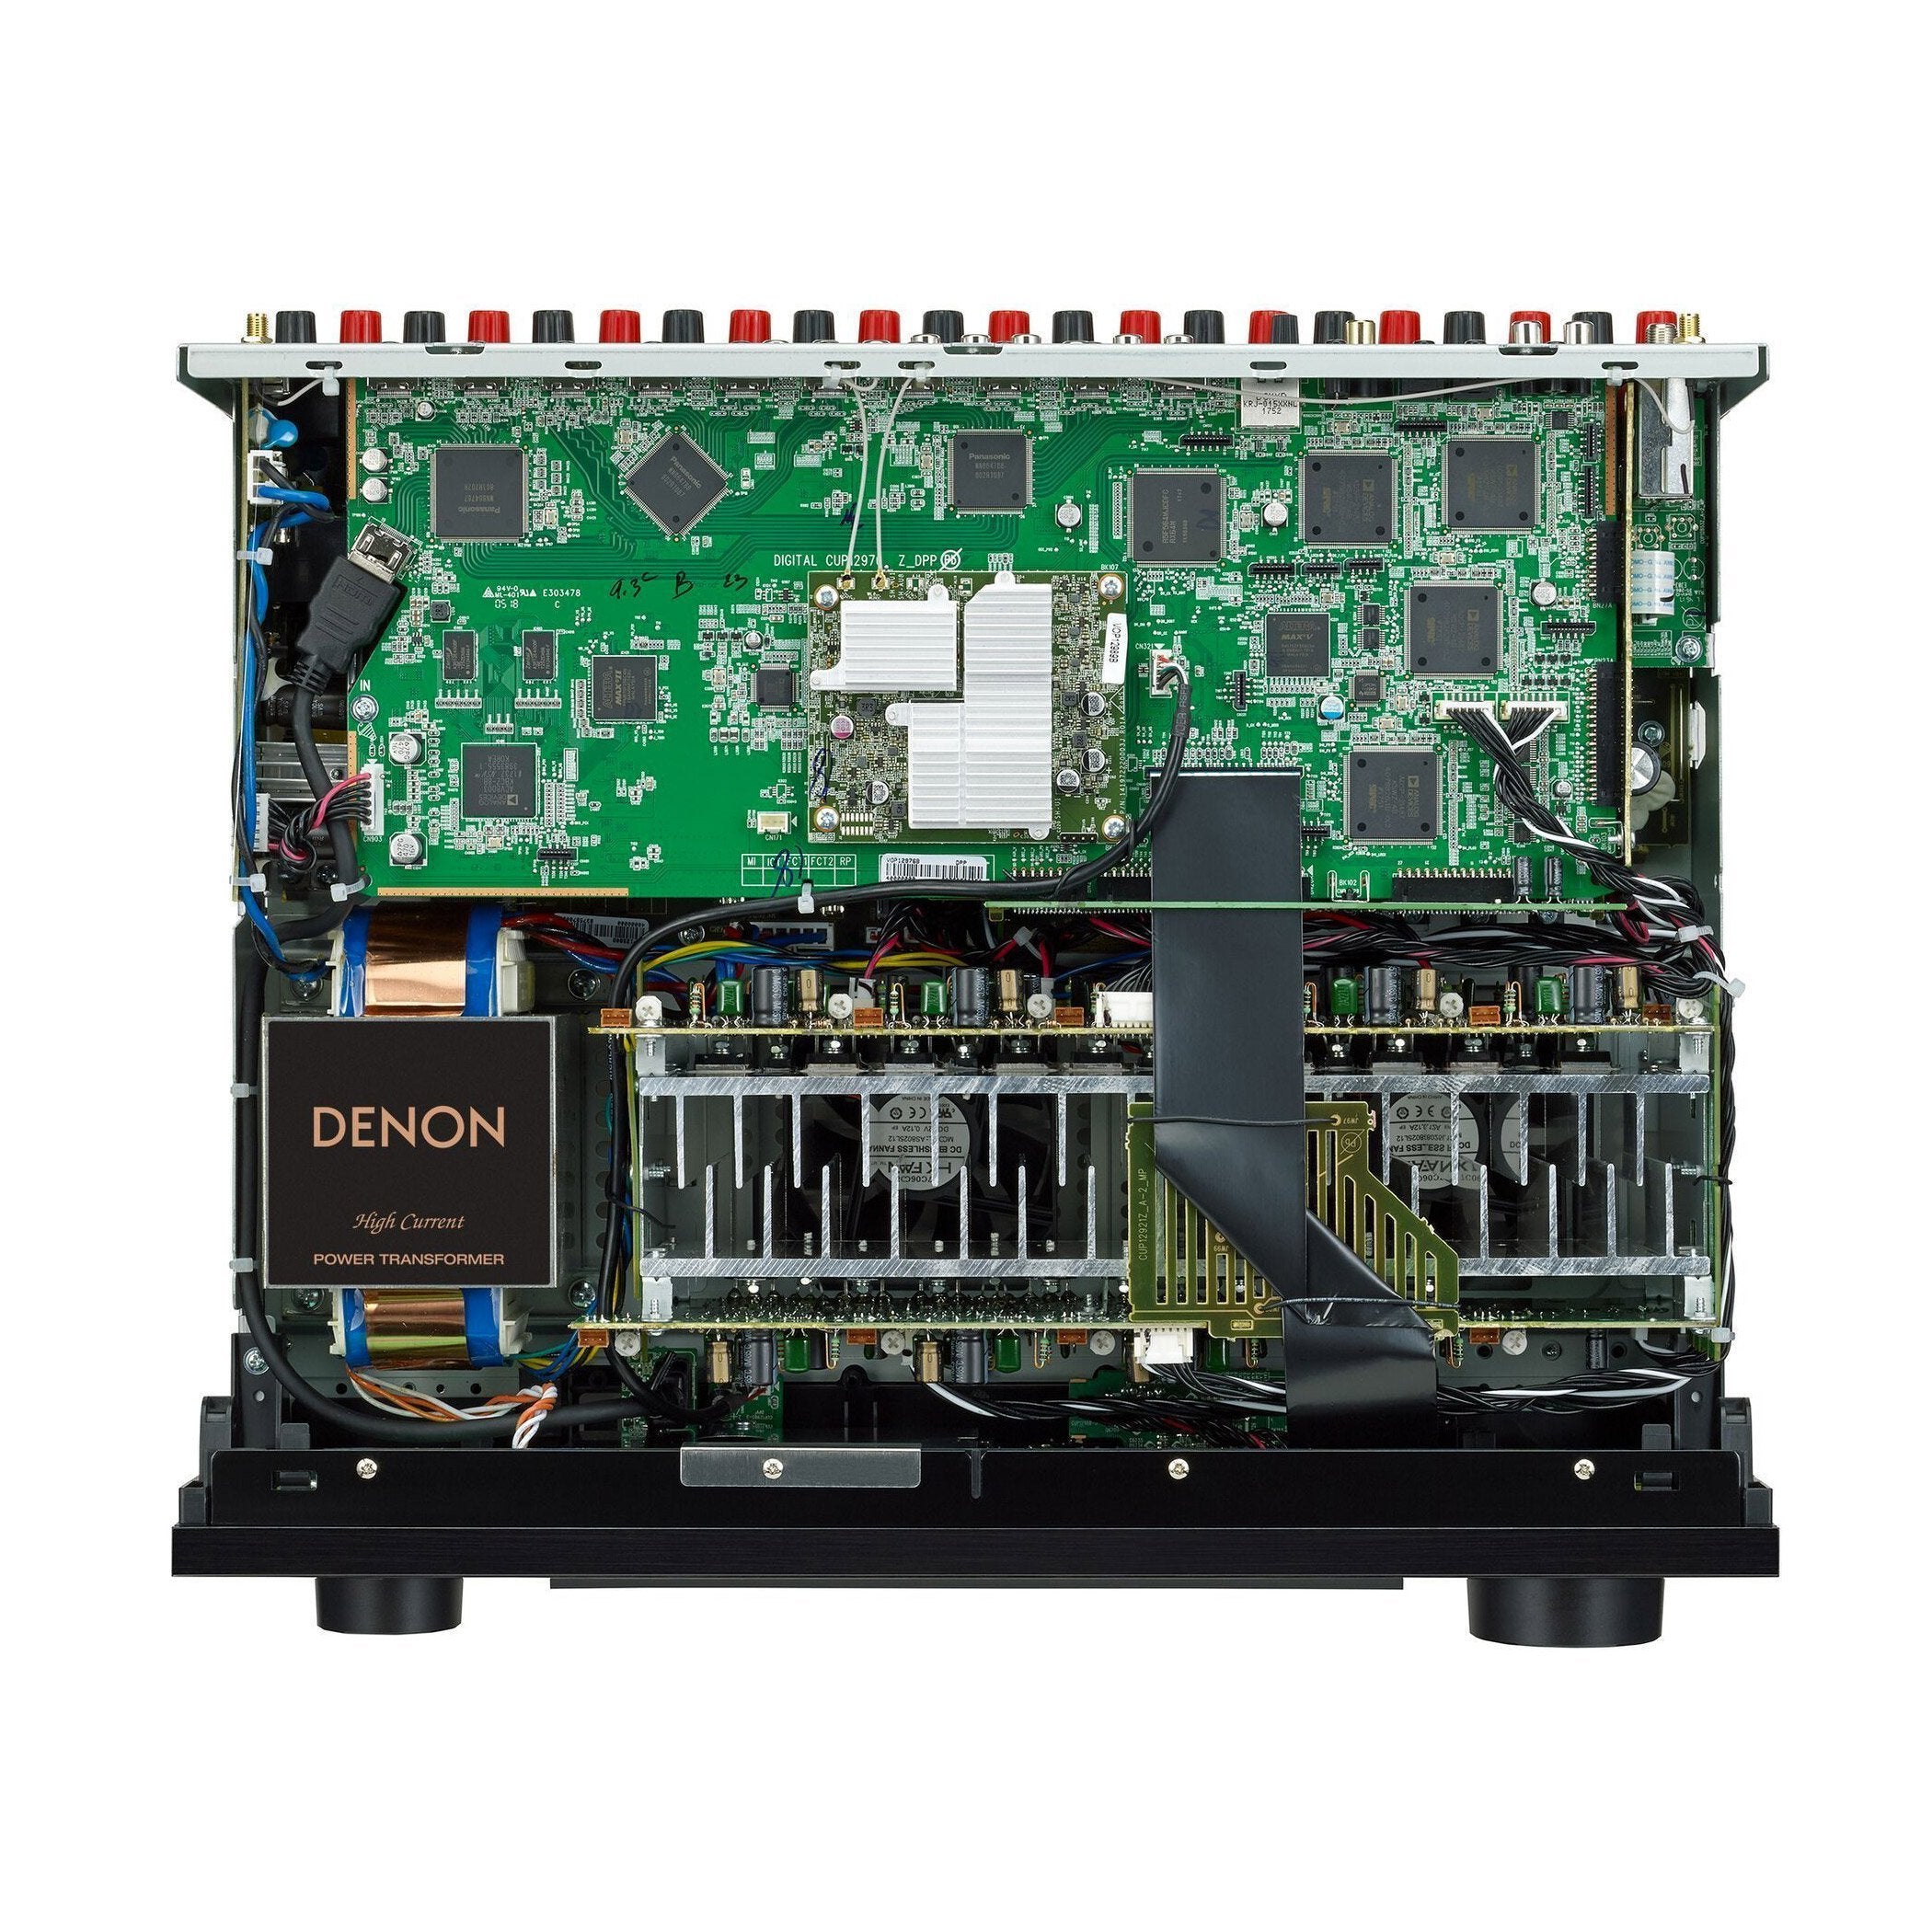 Denon AVR-X4500H 9.2 Ch High Power 4K A/V Receiver with Amazon Alexa Voice Control